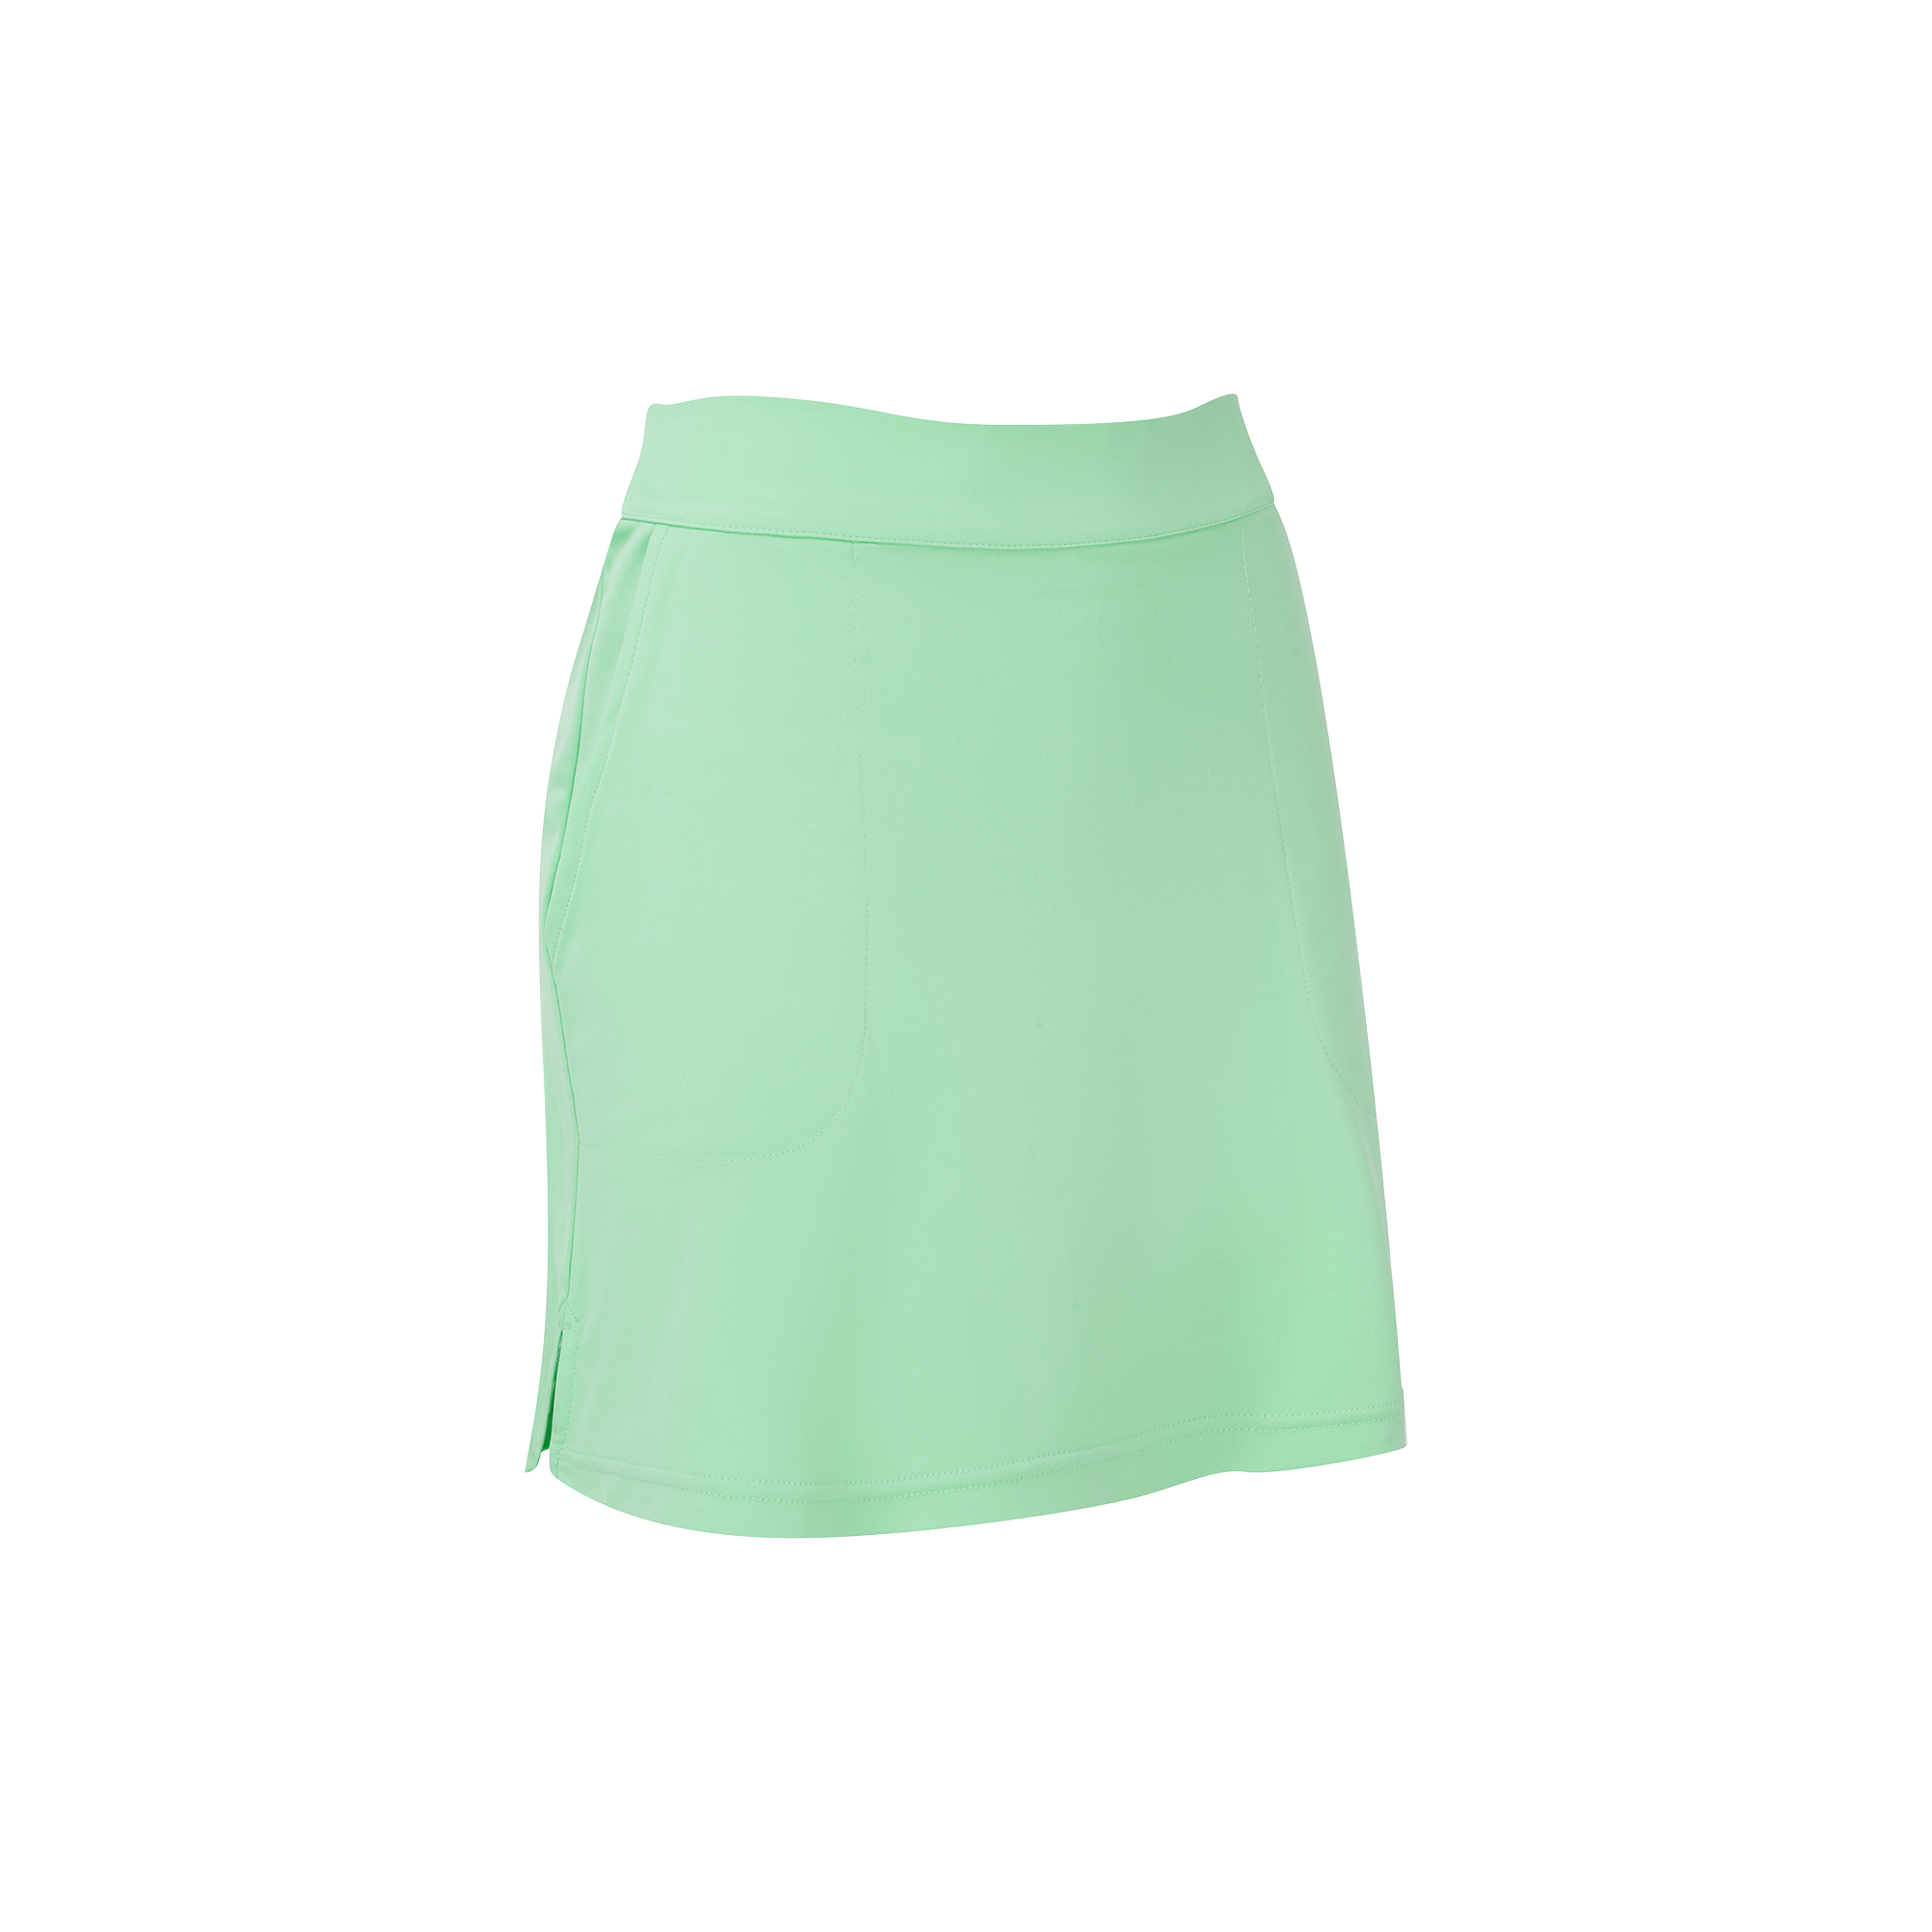 Levně FootJoy Gingham Trim dámská golfová sukně, světle zelená